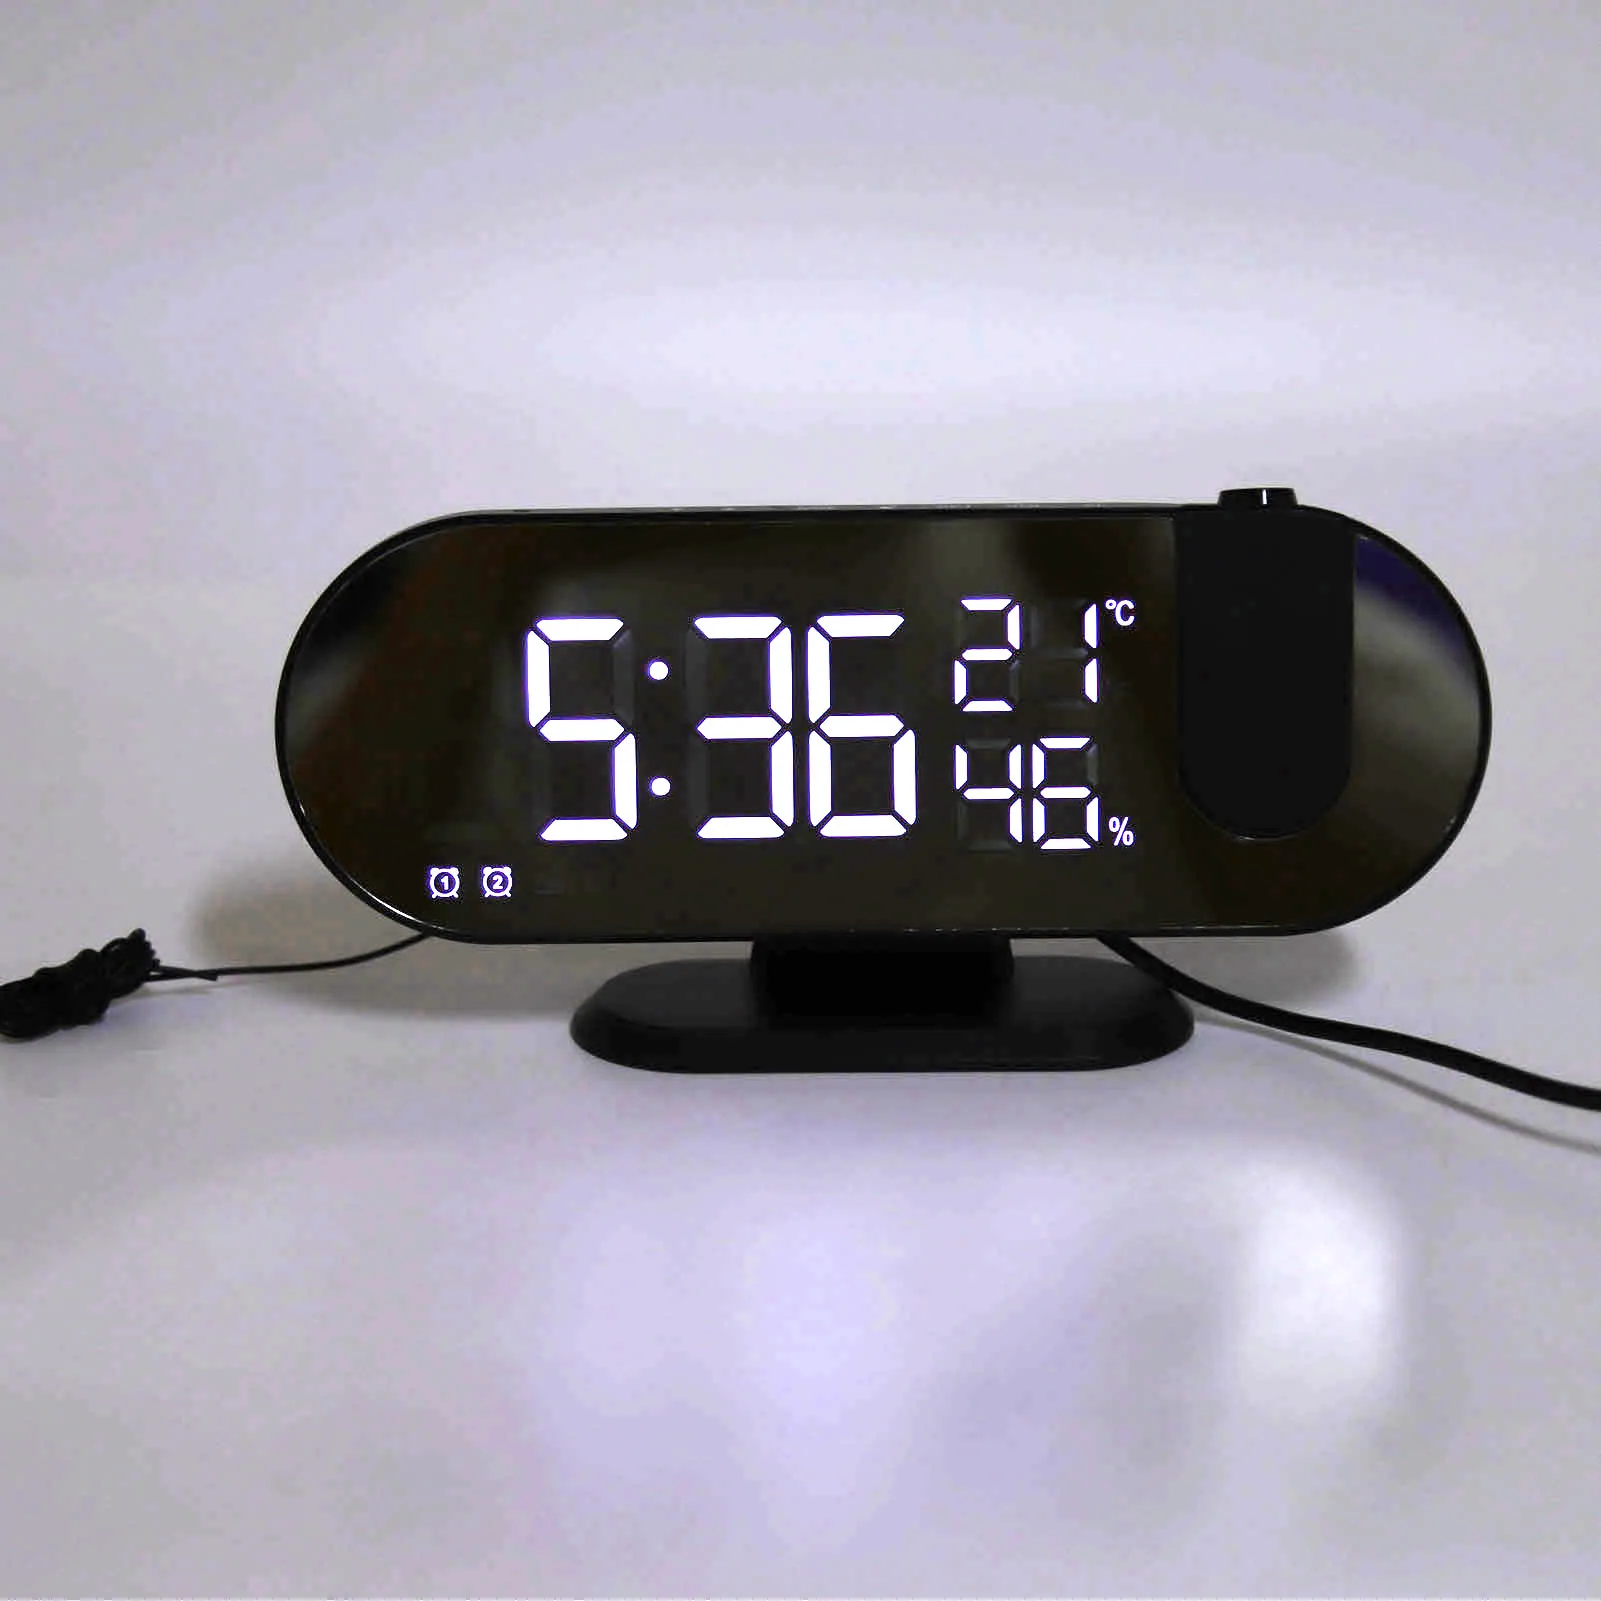 

Проекционный будильник с питанием от USB, зеркальный дисплей, настольные часы, цифровые часы с высокой яркостью, светодиодный светильник